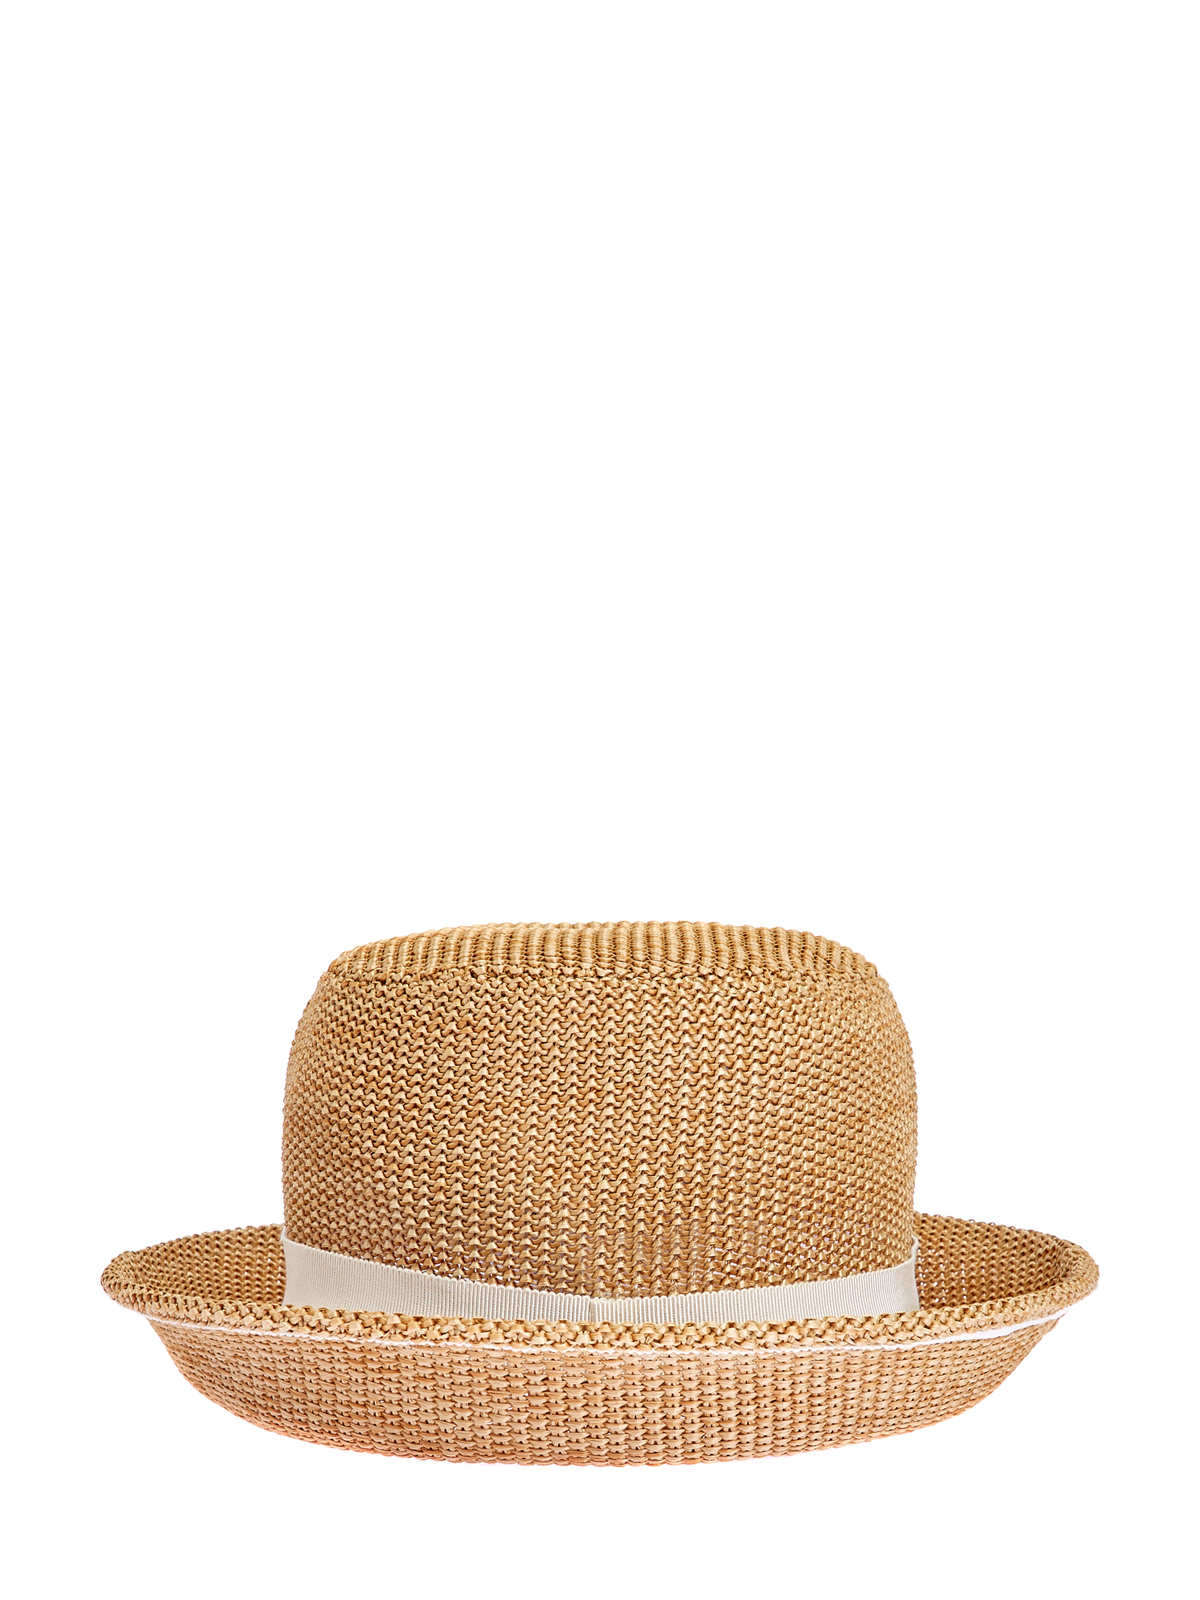 Плетеная шляпа-трилби с вышивкой ручной работы ERMANNO SCERVINO, цвет бежевый, размер L - фото 3